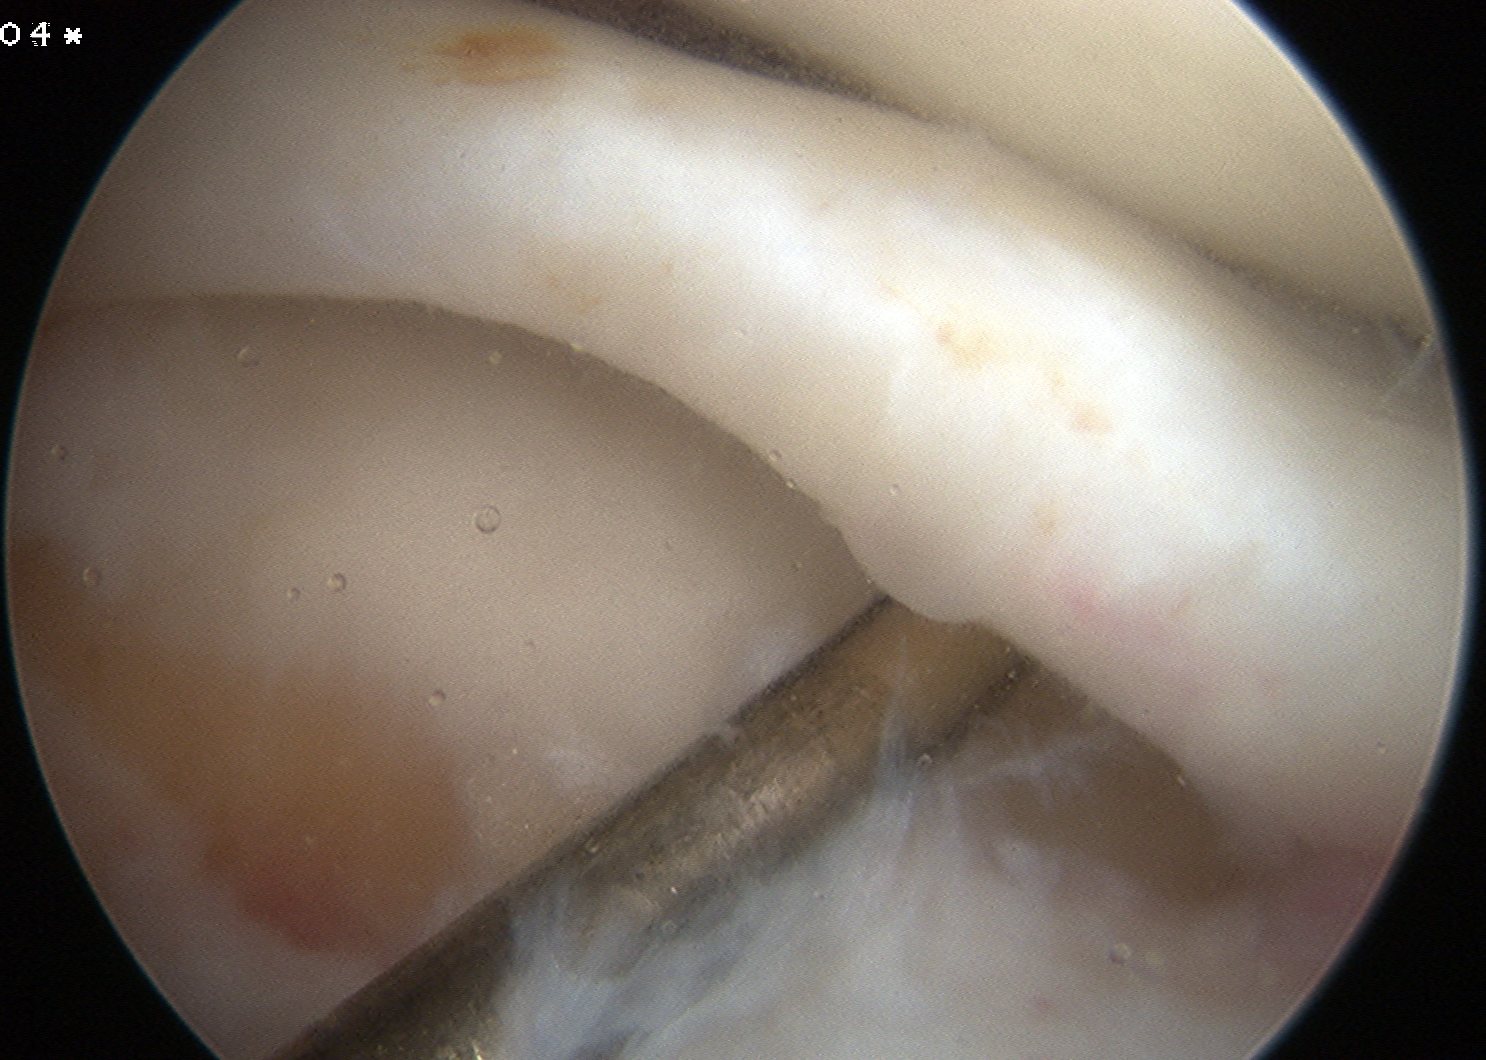 Lateral Meniscus Anterior Horn Tear